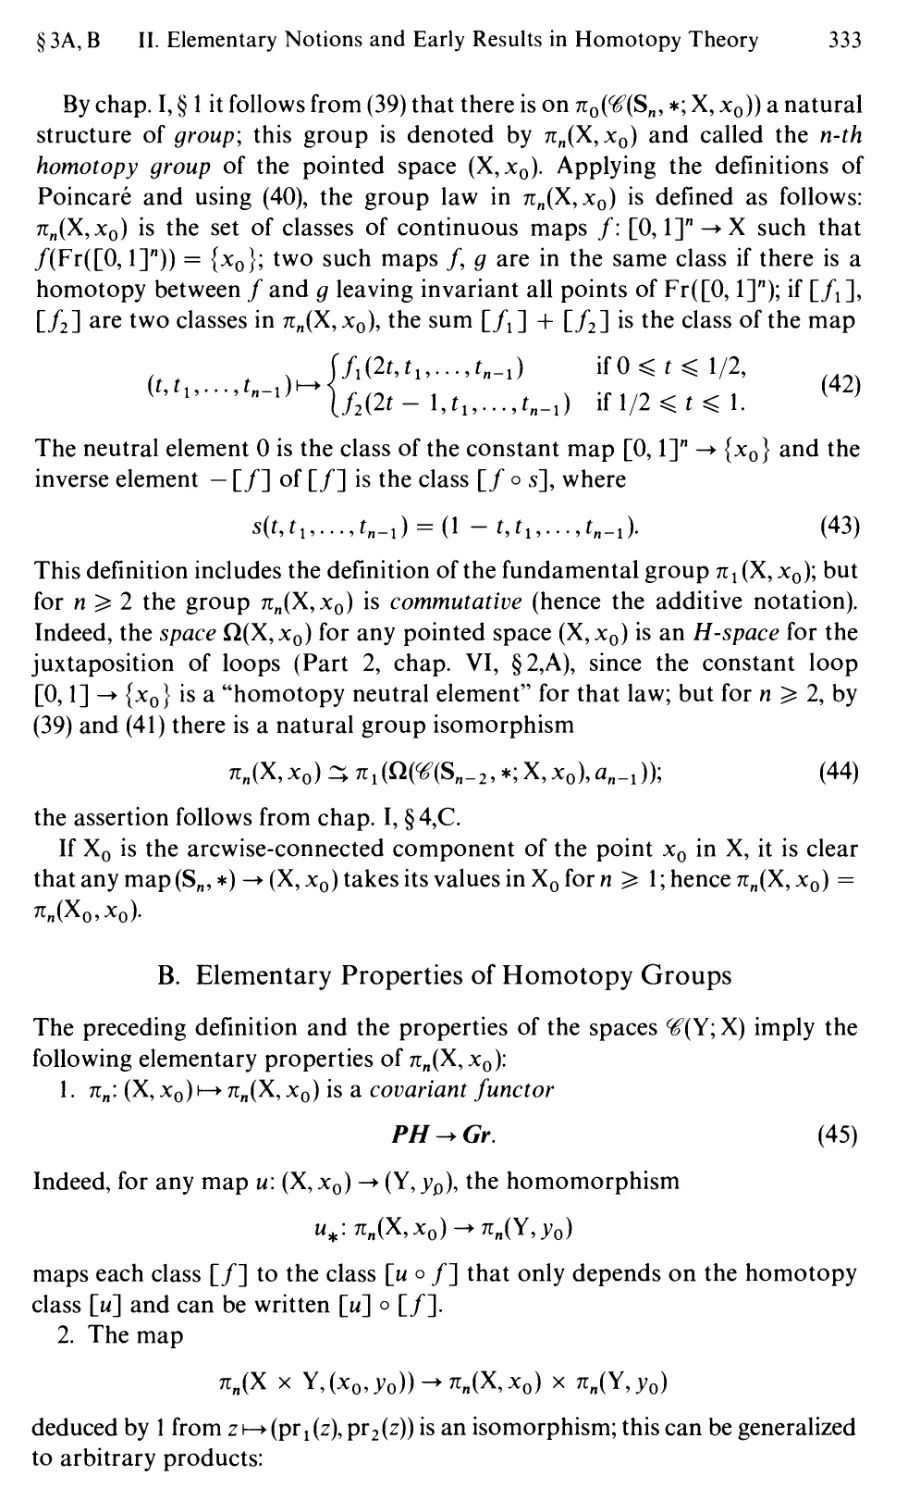 B. Elementary Properties of Homotopy Groups